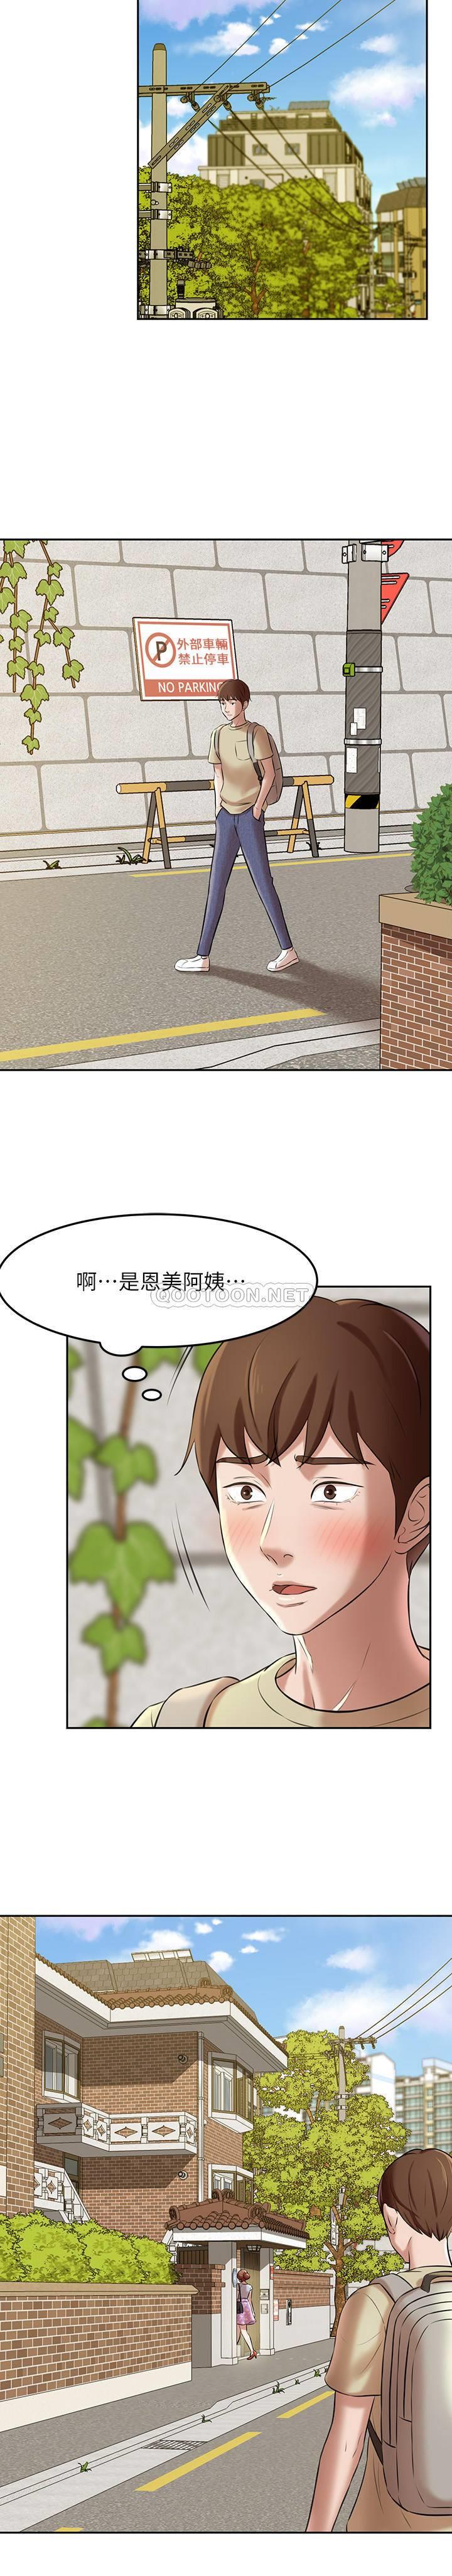 韩国污漫画 小褲褲筆記 第8话 - 阿姨为什么要躲我? 26